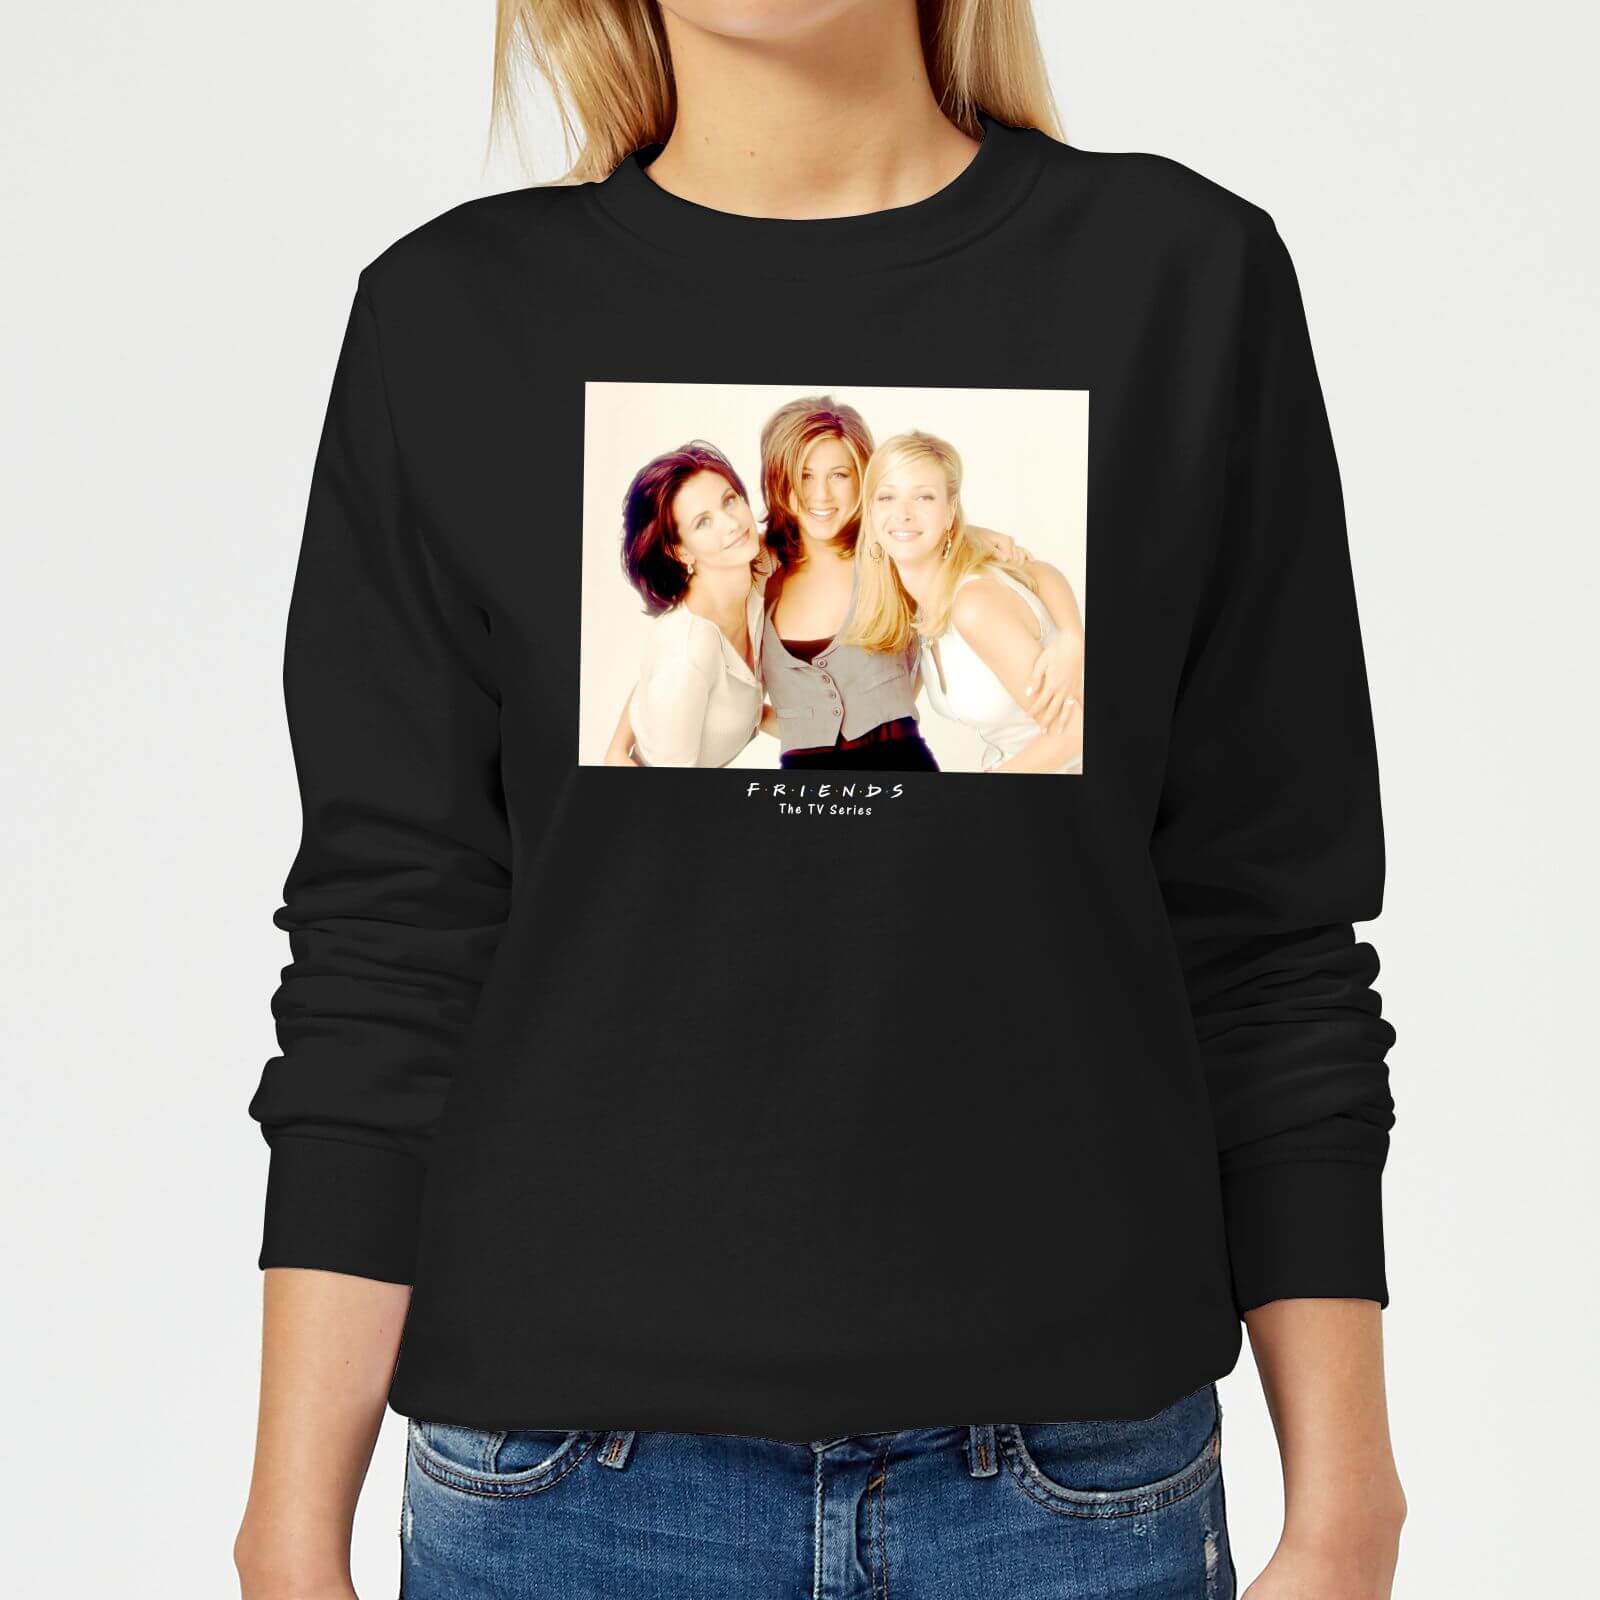 Friends Girls Women's Sweatshirt - Black - S - Black